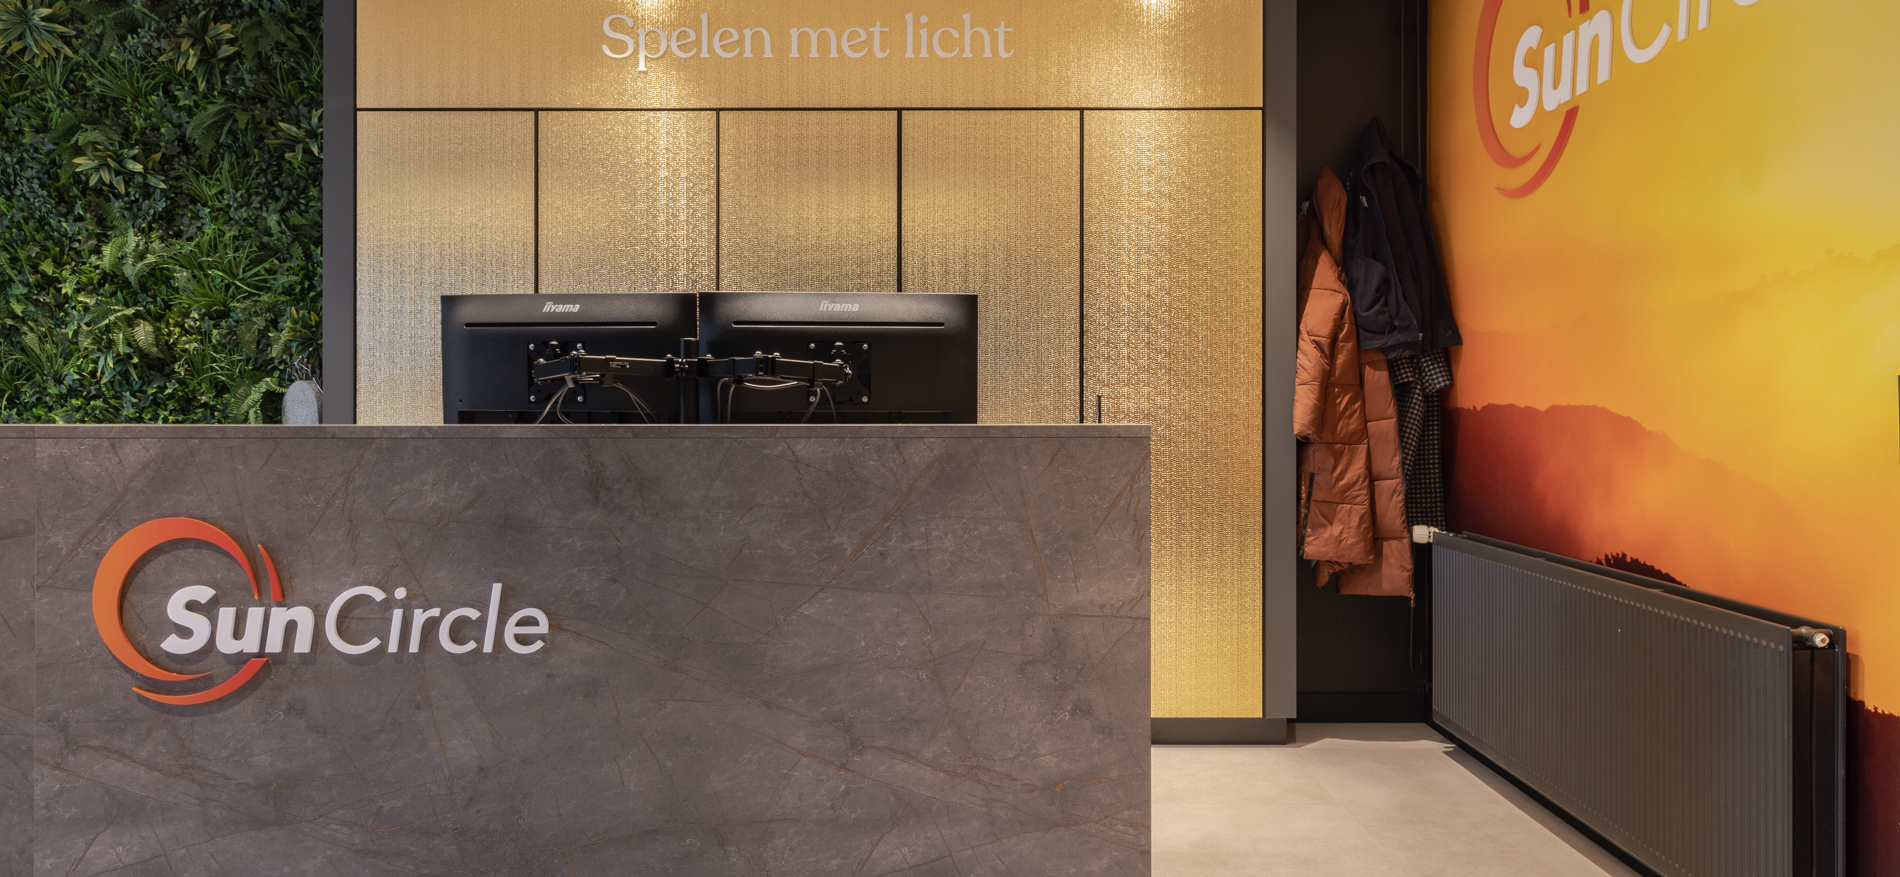 SunCircle Showroom | Nieuwegein (NL) - Showroom